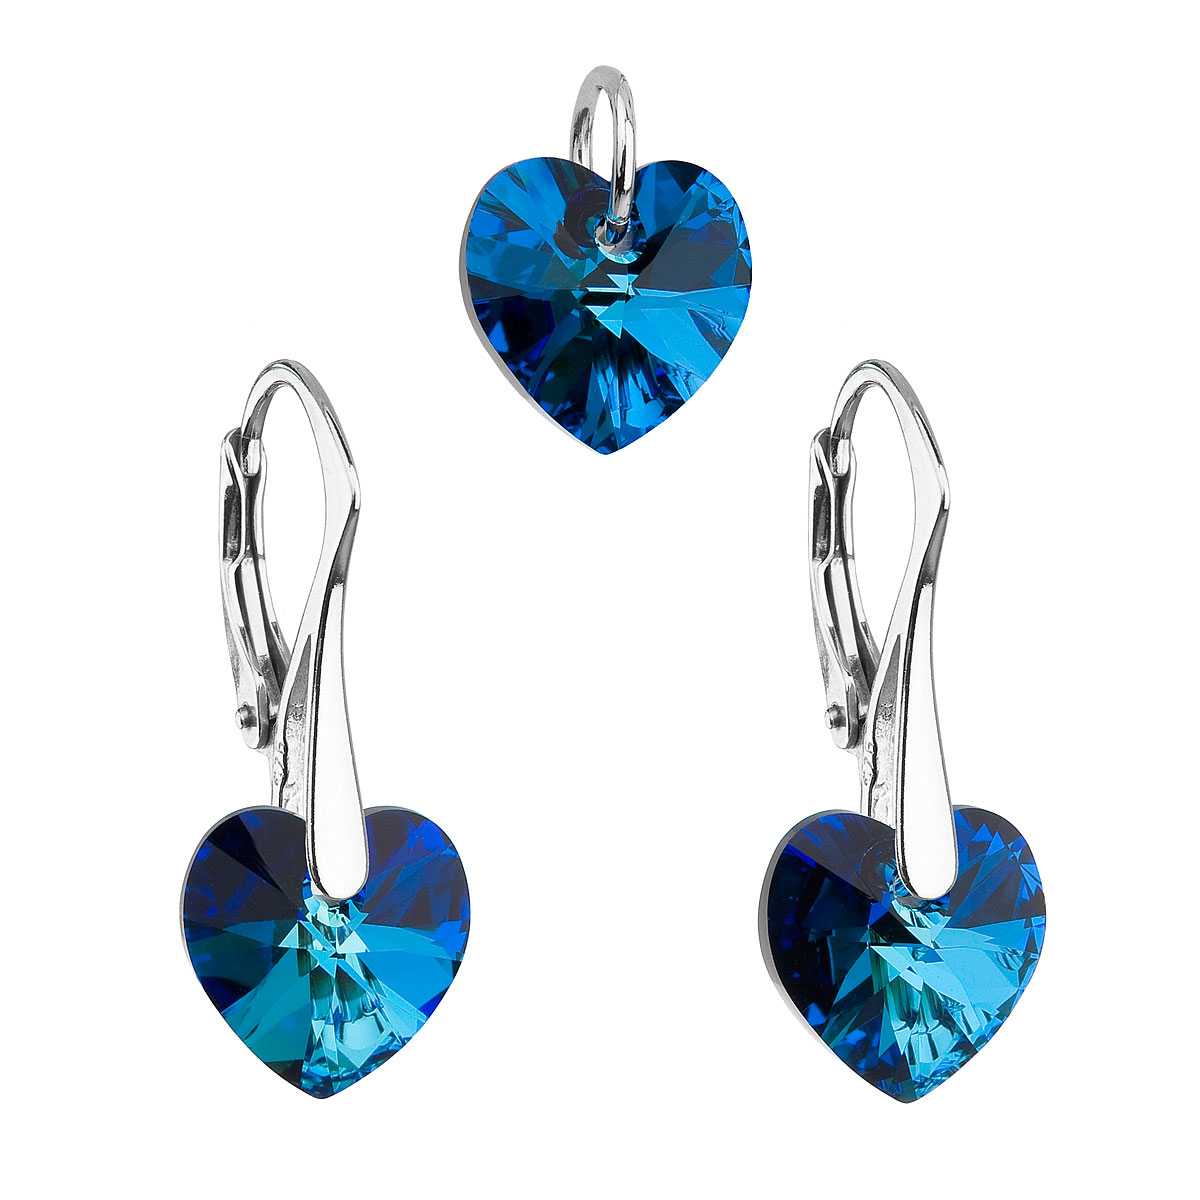 Evolution Group Sada šperků s krystaly Swarovski náušnice a přívěsek modrá srdce 39003.5 bermuda blue